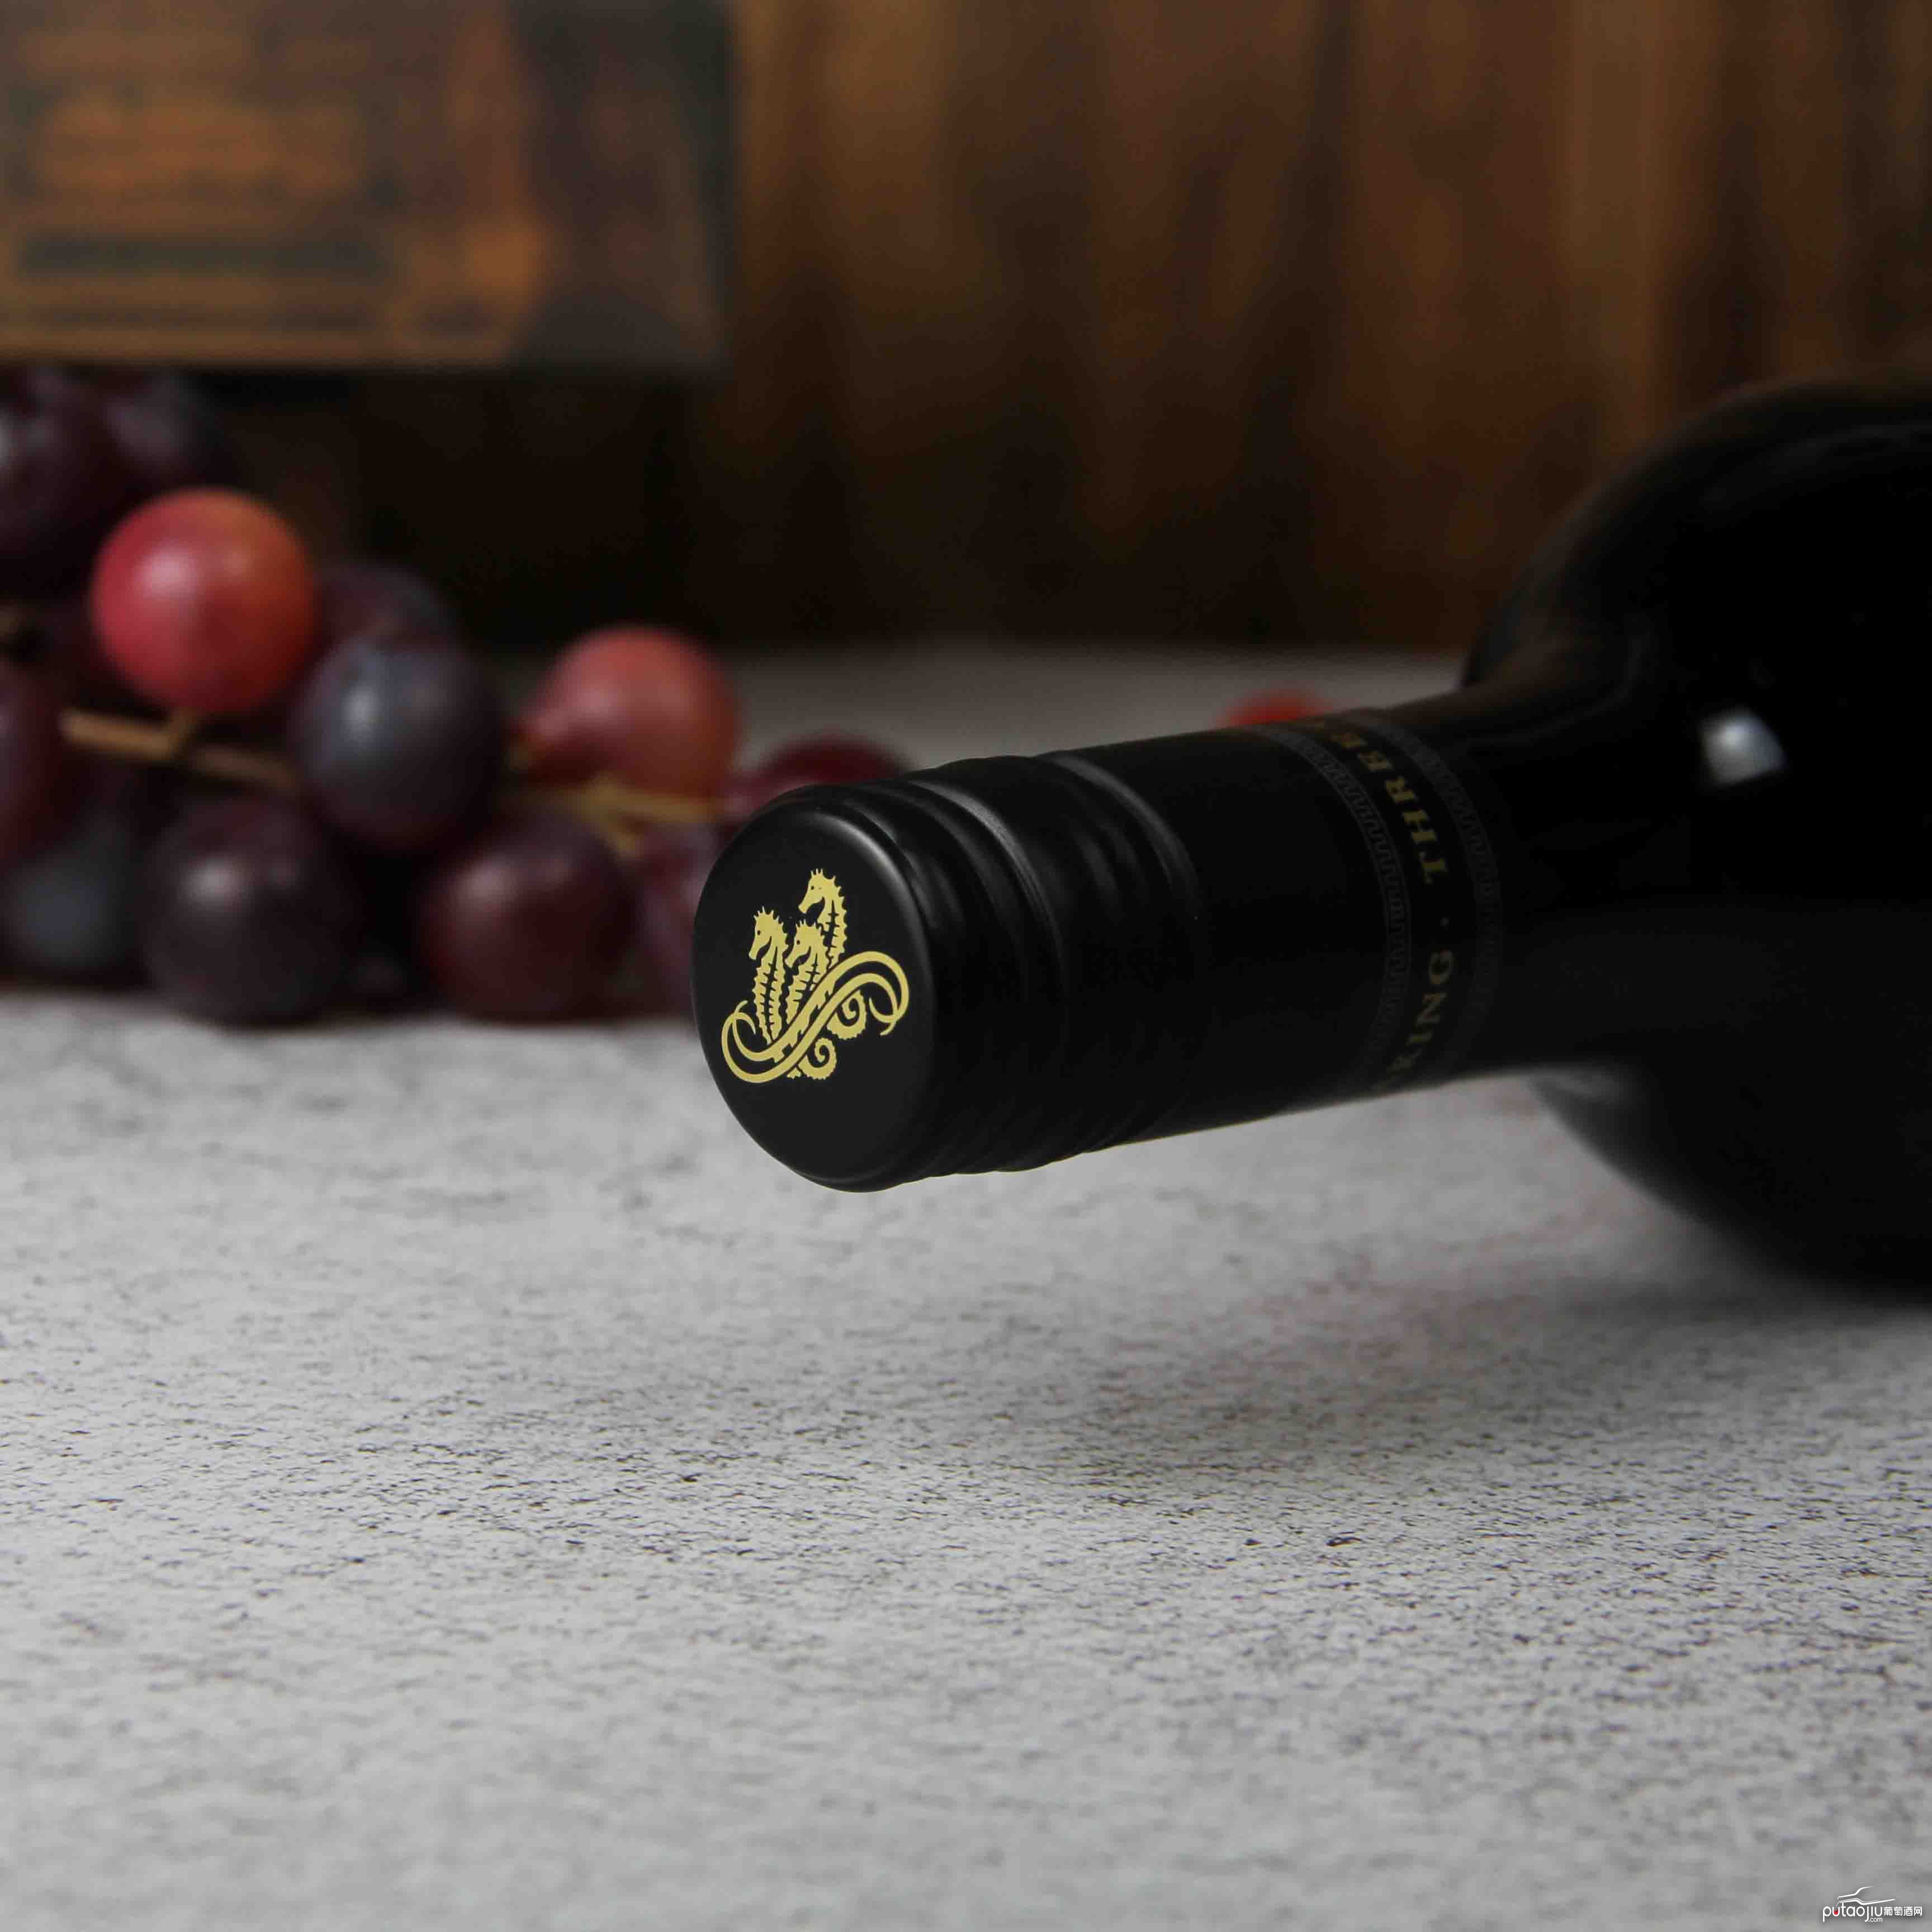 澳大利亚 南澳海龙园西拉赤霞珠红葡萄酒2015